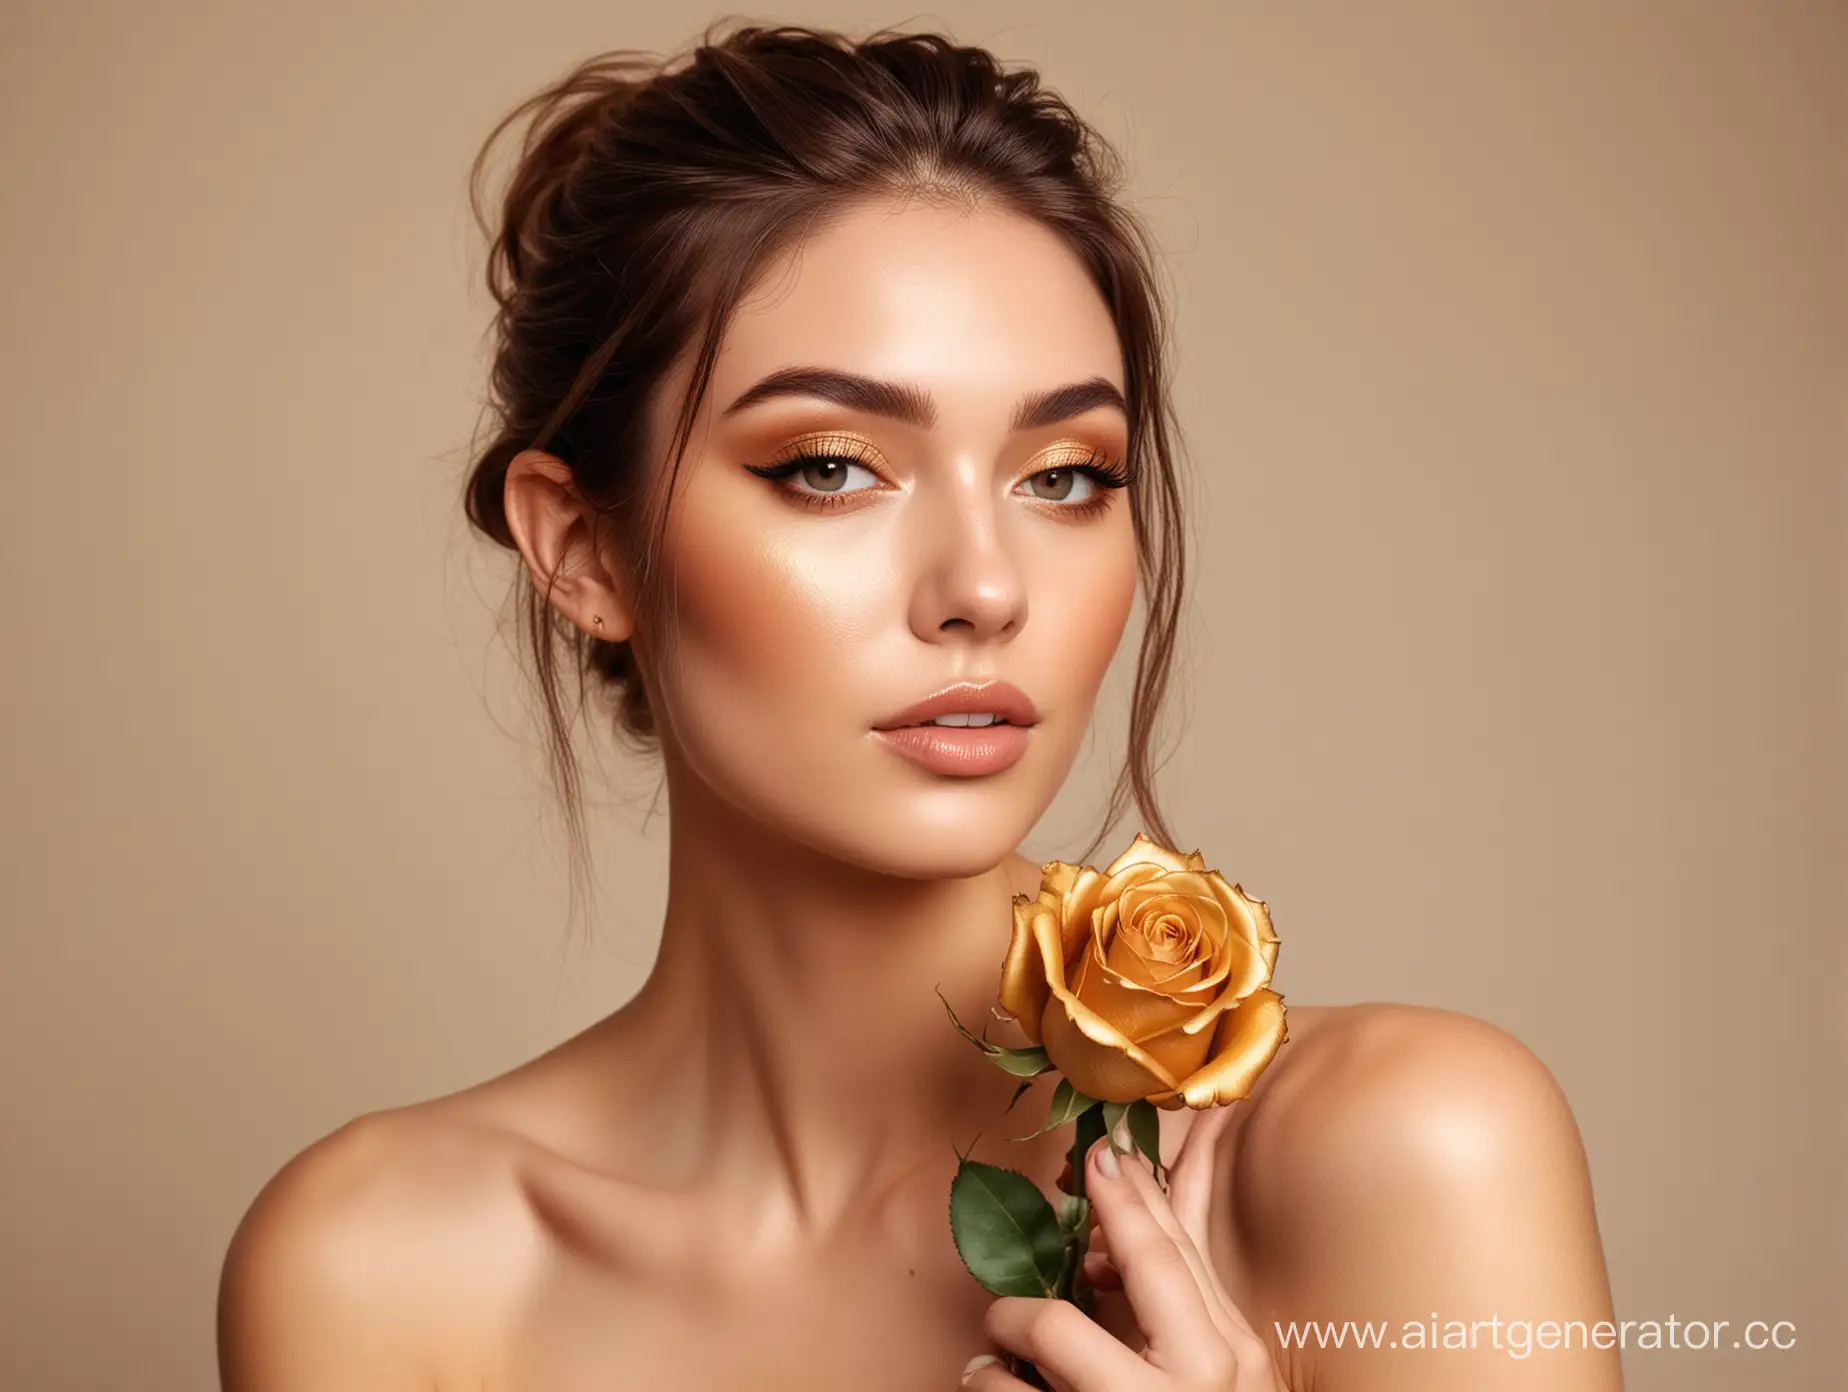 женщина с модельным лицом с обнаженными плечами позирует с золотой розой с легким макияжем